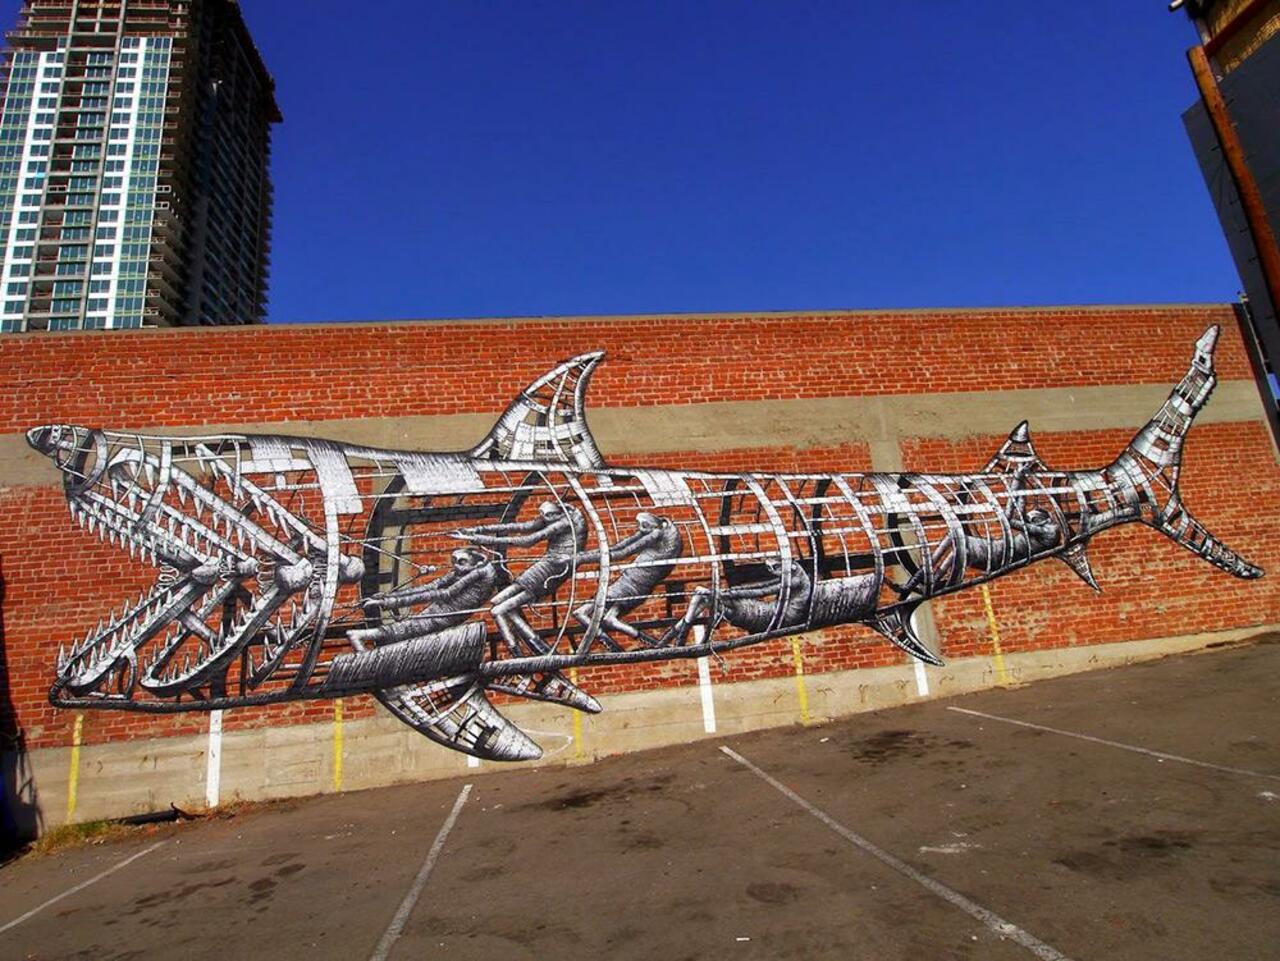 Coolest mechanical shark mural. Check out more: http://buff.ly/1xsCQDL #graffiti #urbanart #artist http://t.co/ij6FLmVk94